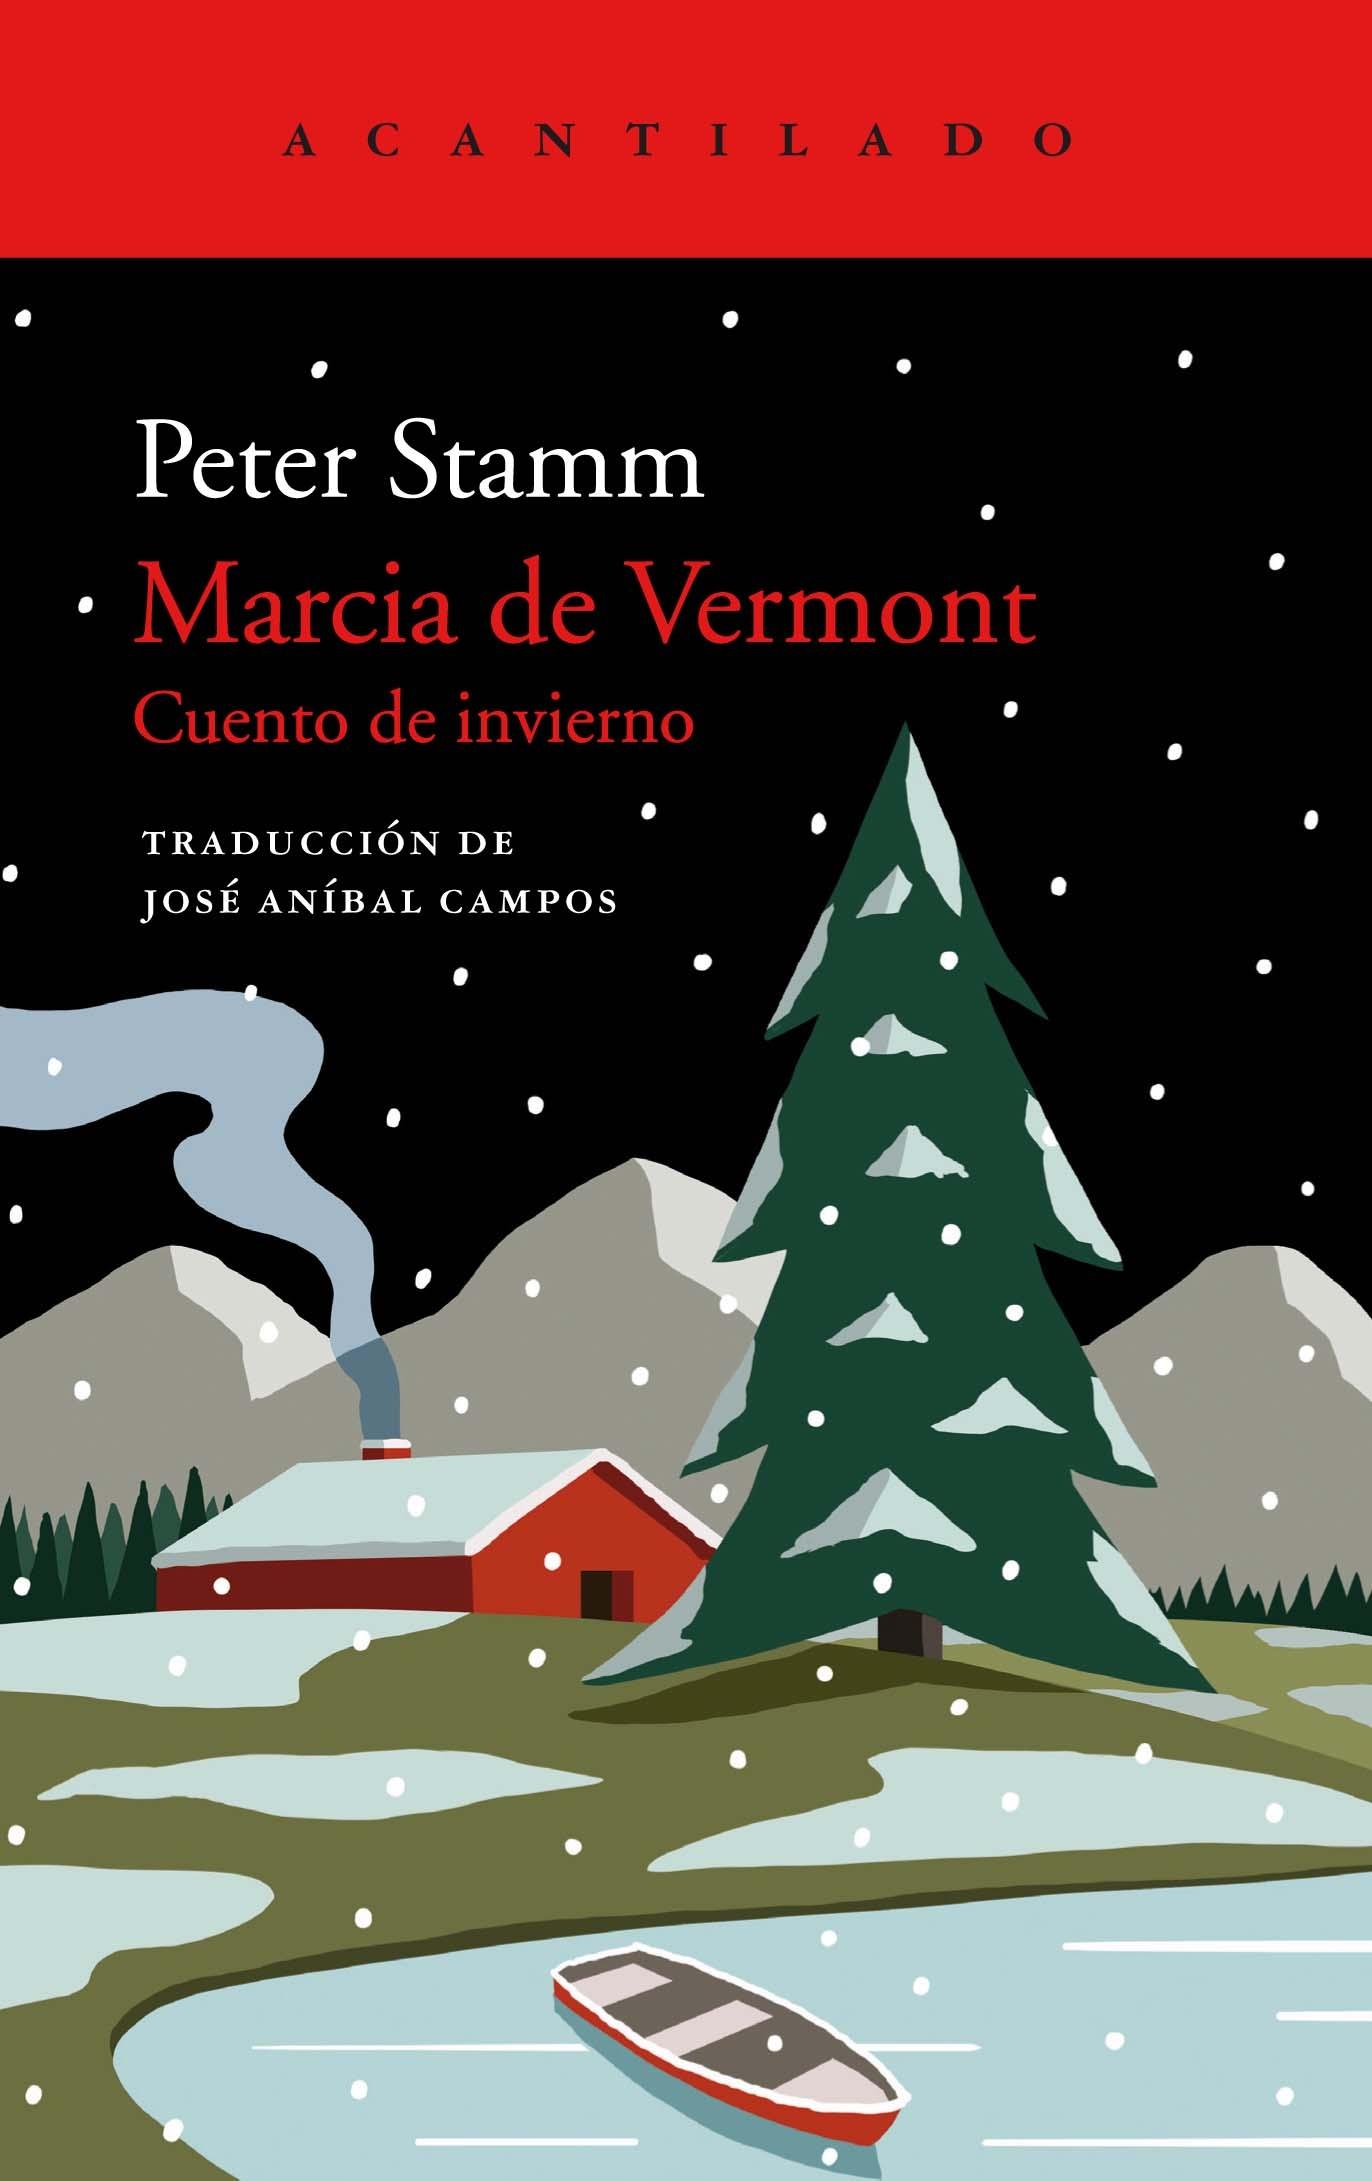 Marcia de Vermont "Cuento de Invierno"